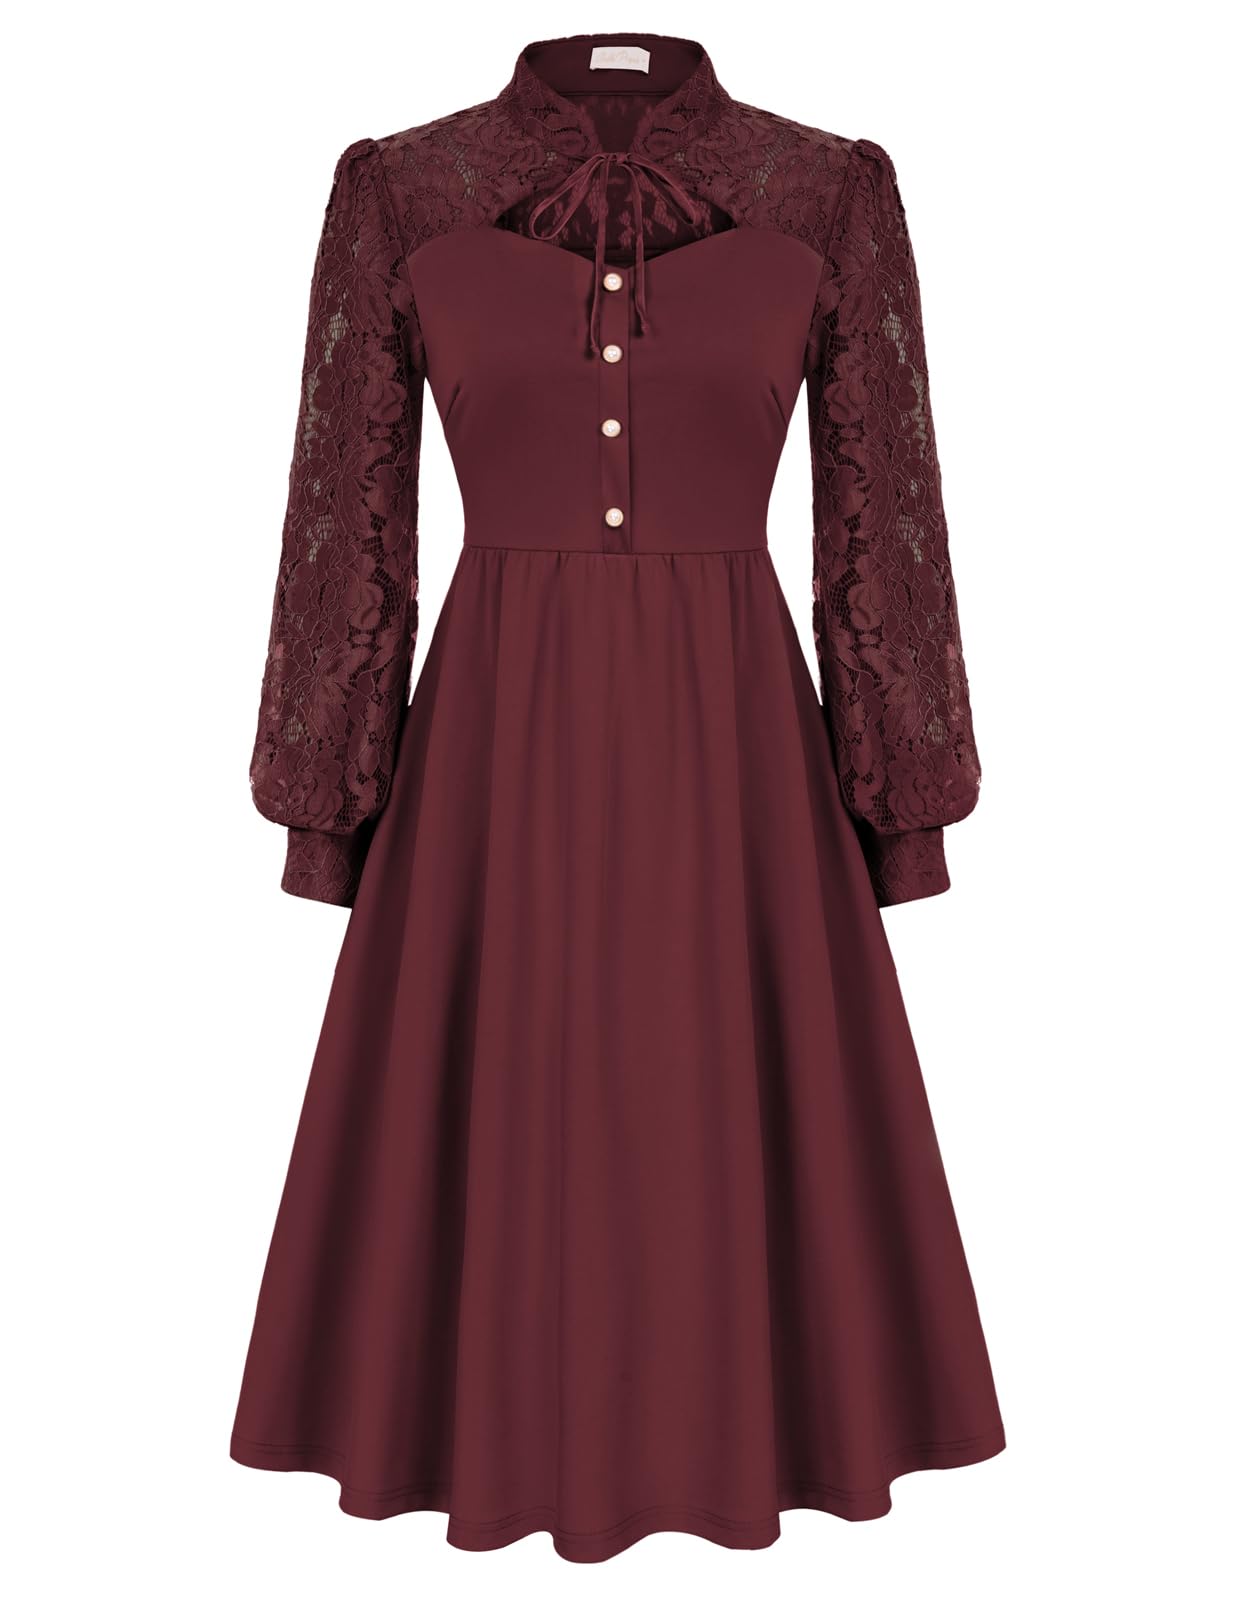 Damen Gothic Kleid Elegant Langarm A-Linie Kleider Festliche Cocktailkleid Abendkleid Weinrot XL